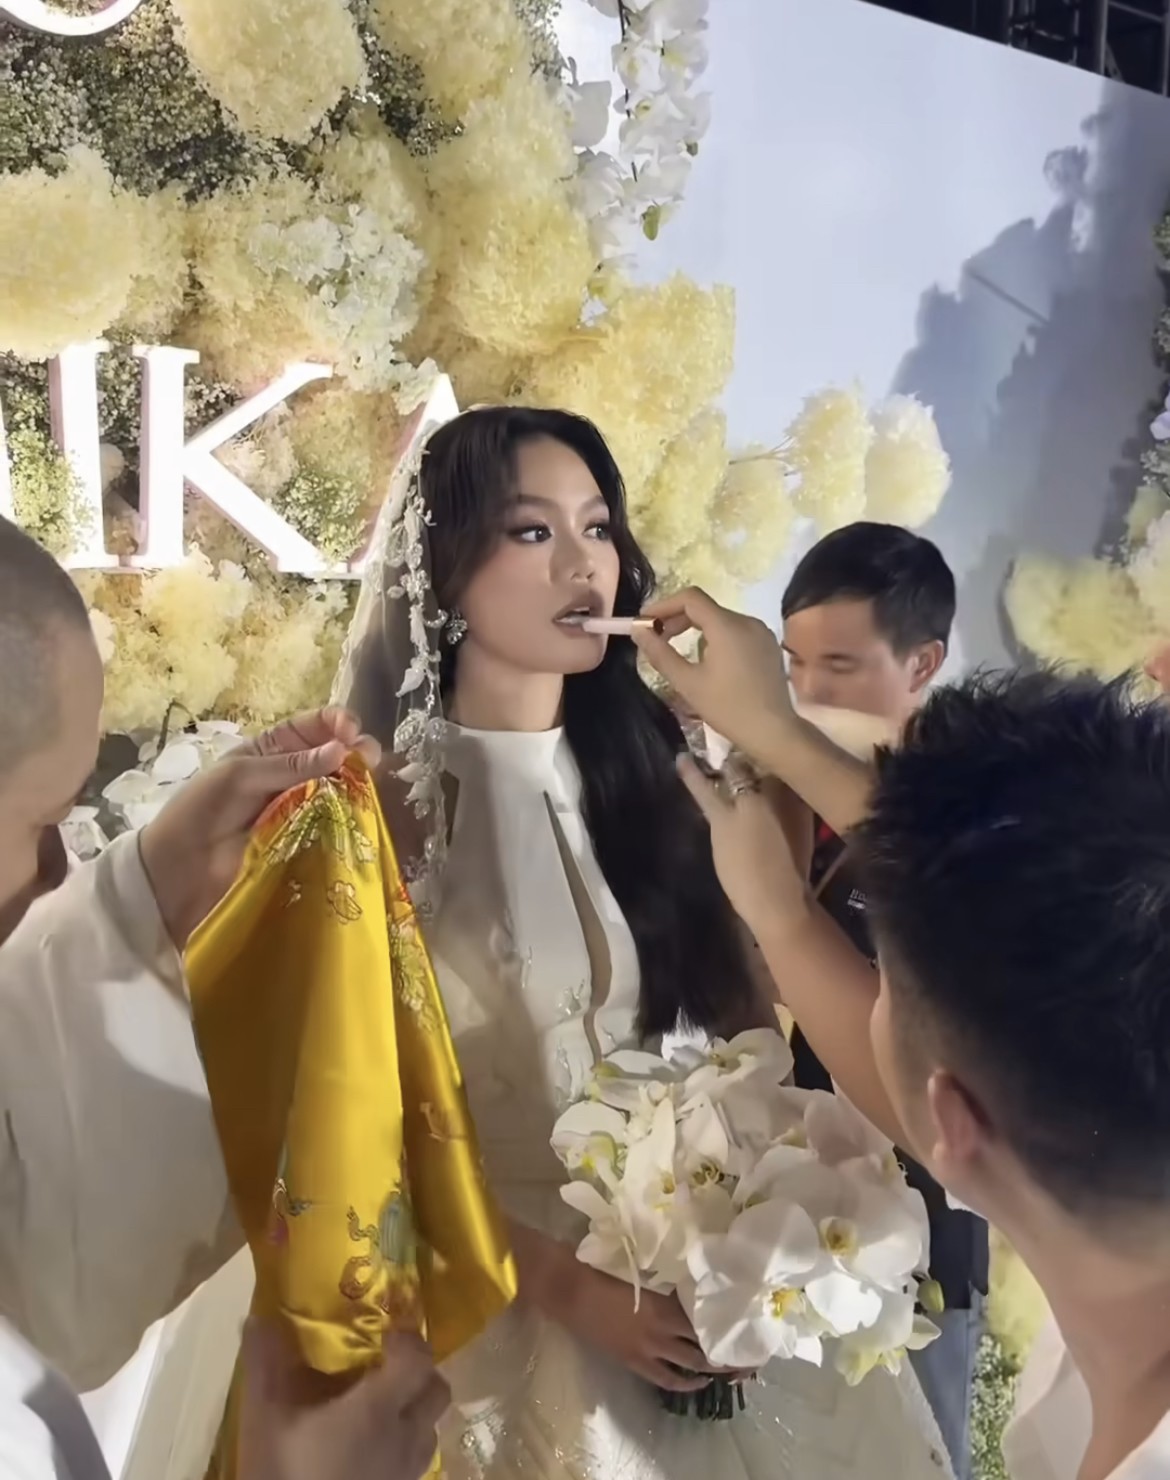 Thiên kim gia tộc sống thiền bí ẩn nhất Việt Nam làm cô dâu, mặc áo dài cưới "độc nhất vô nhị" - 5